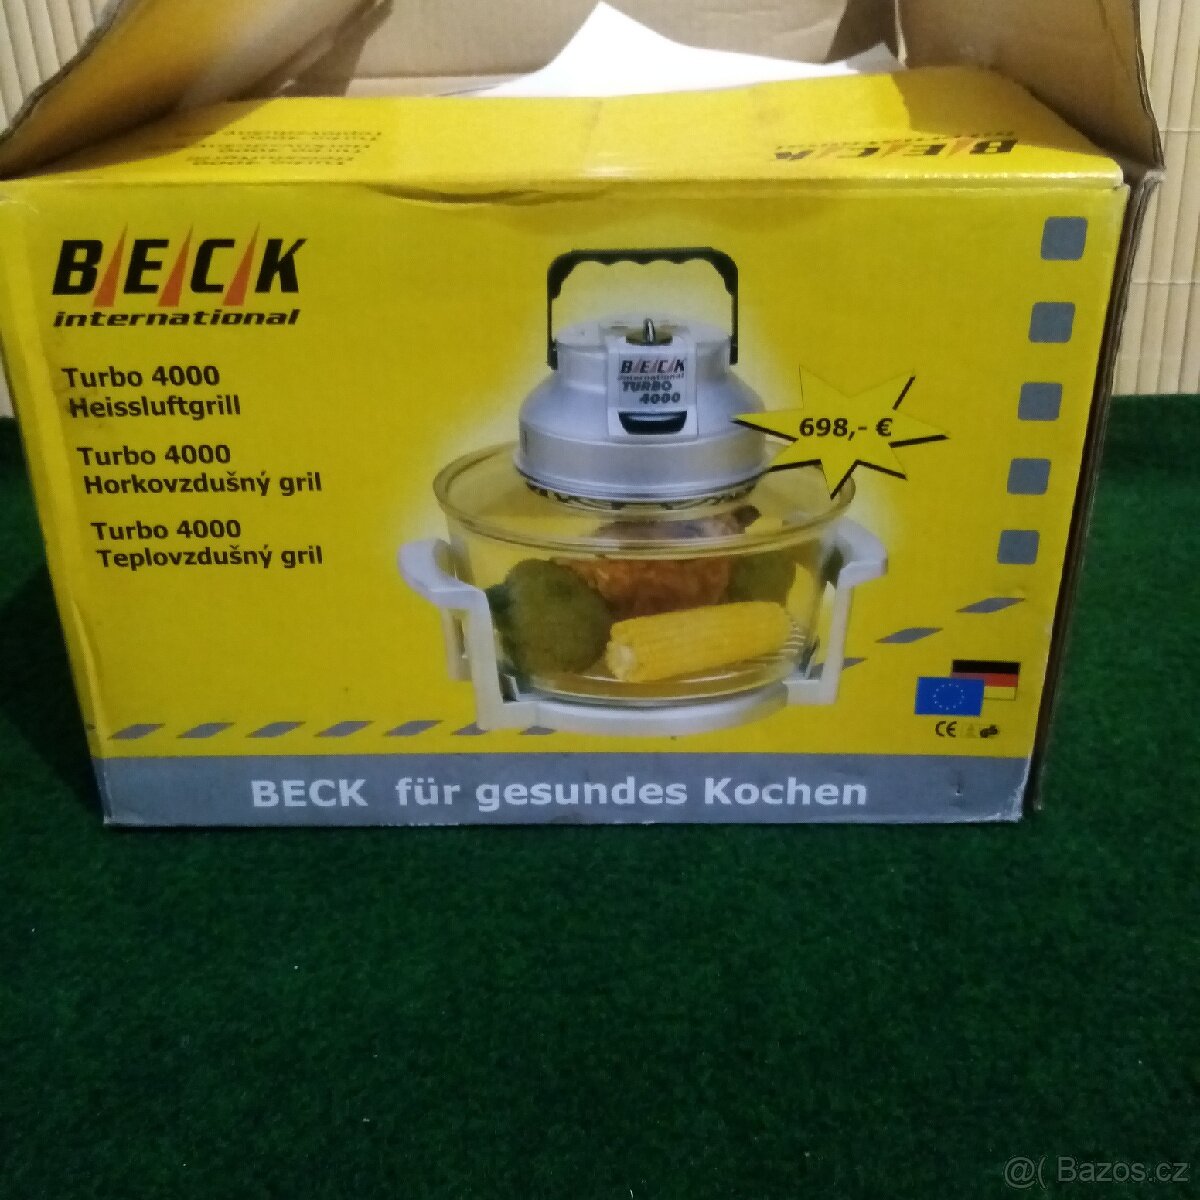 Beck - horkovzdušný grill